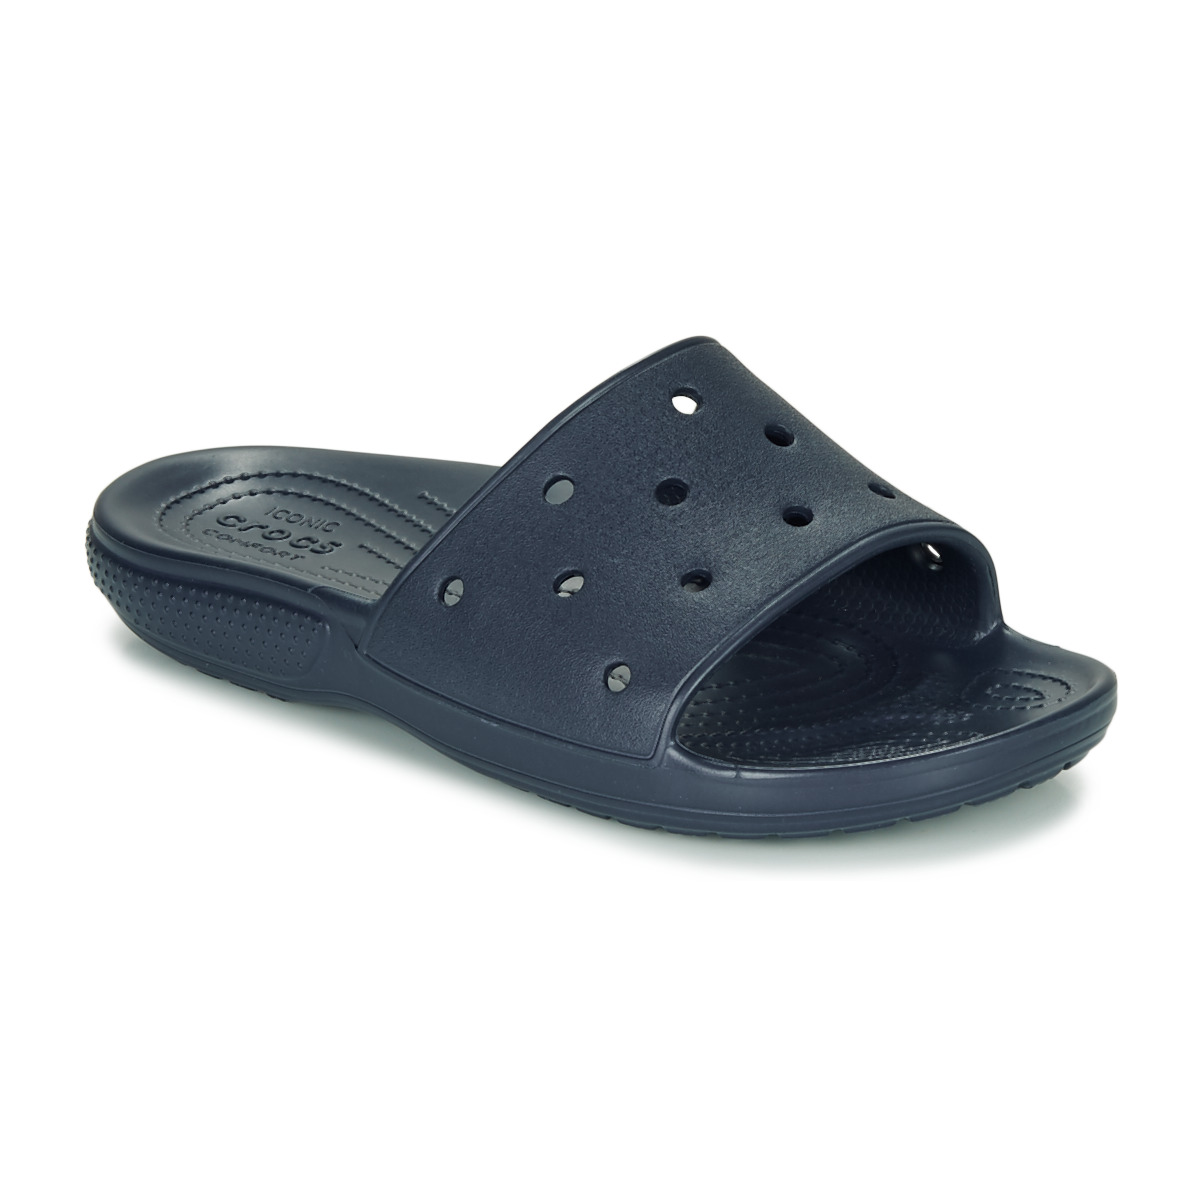 Crocs Unisex Adults’ Classic Slide Open Toe Sandals 